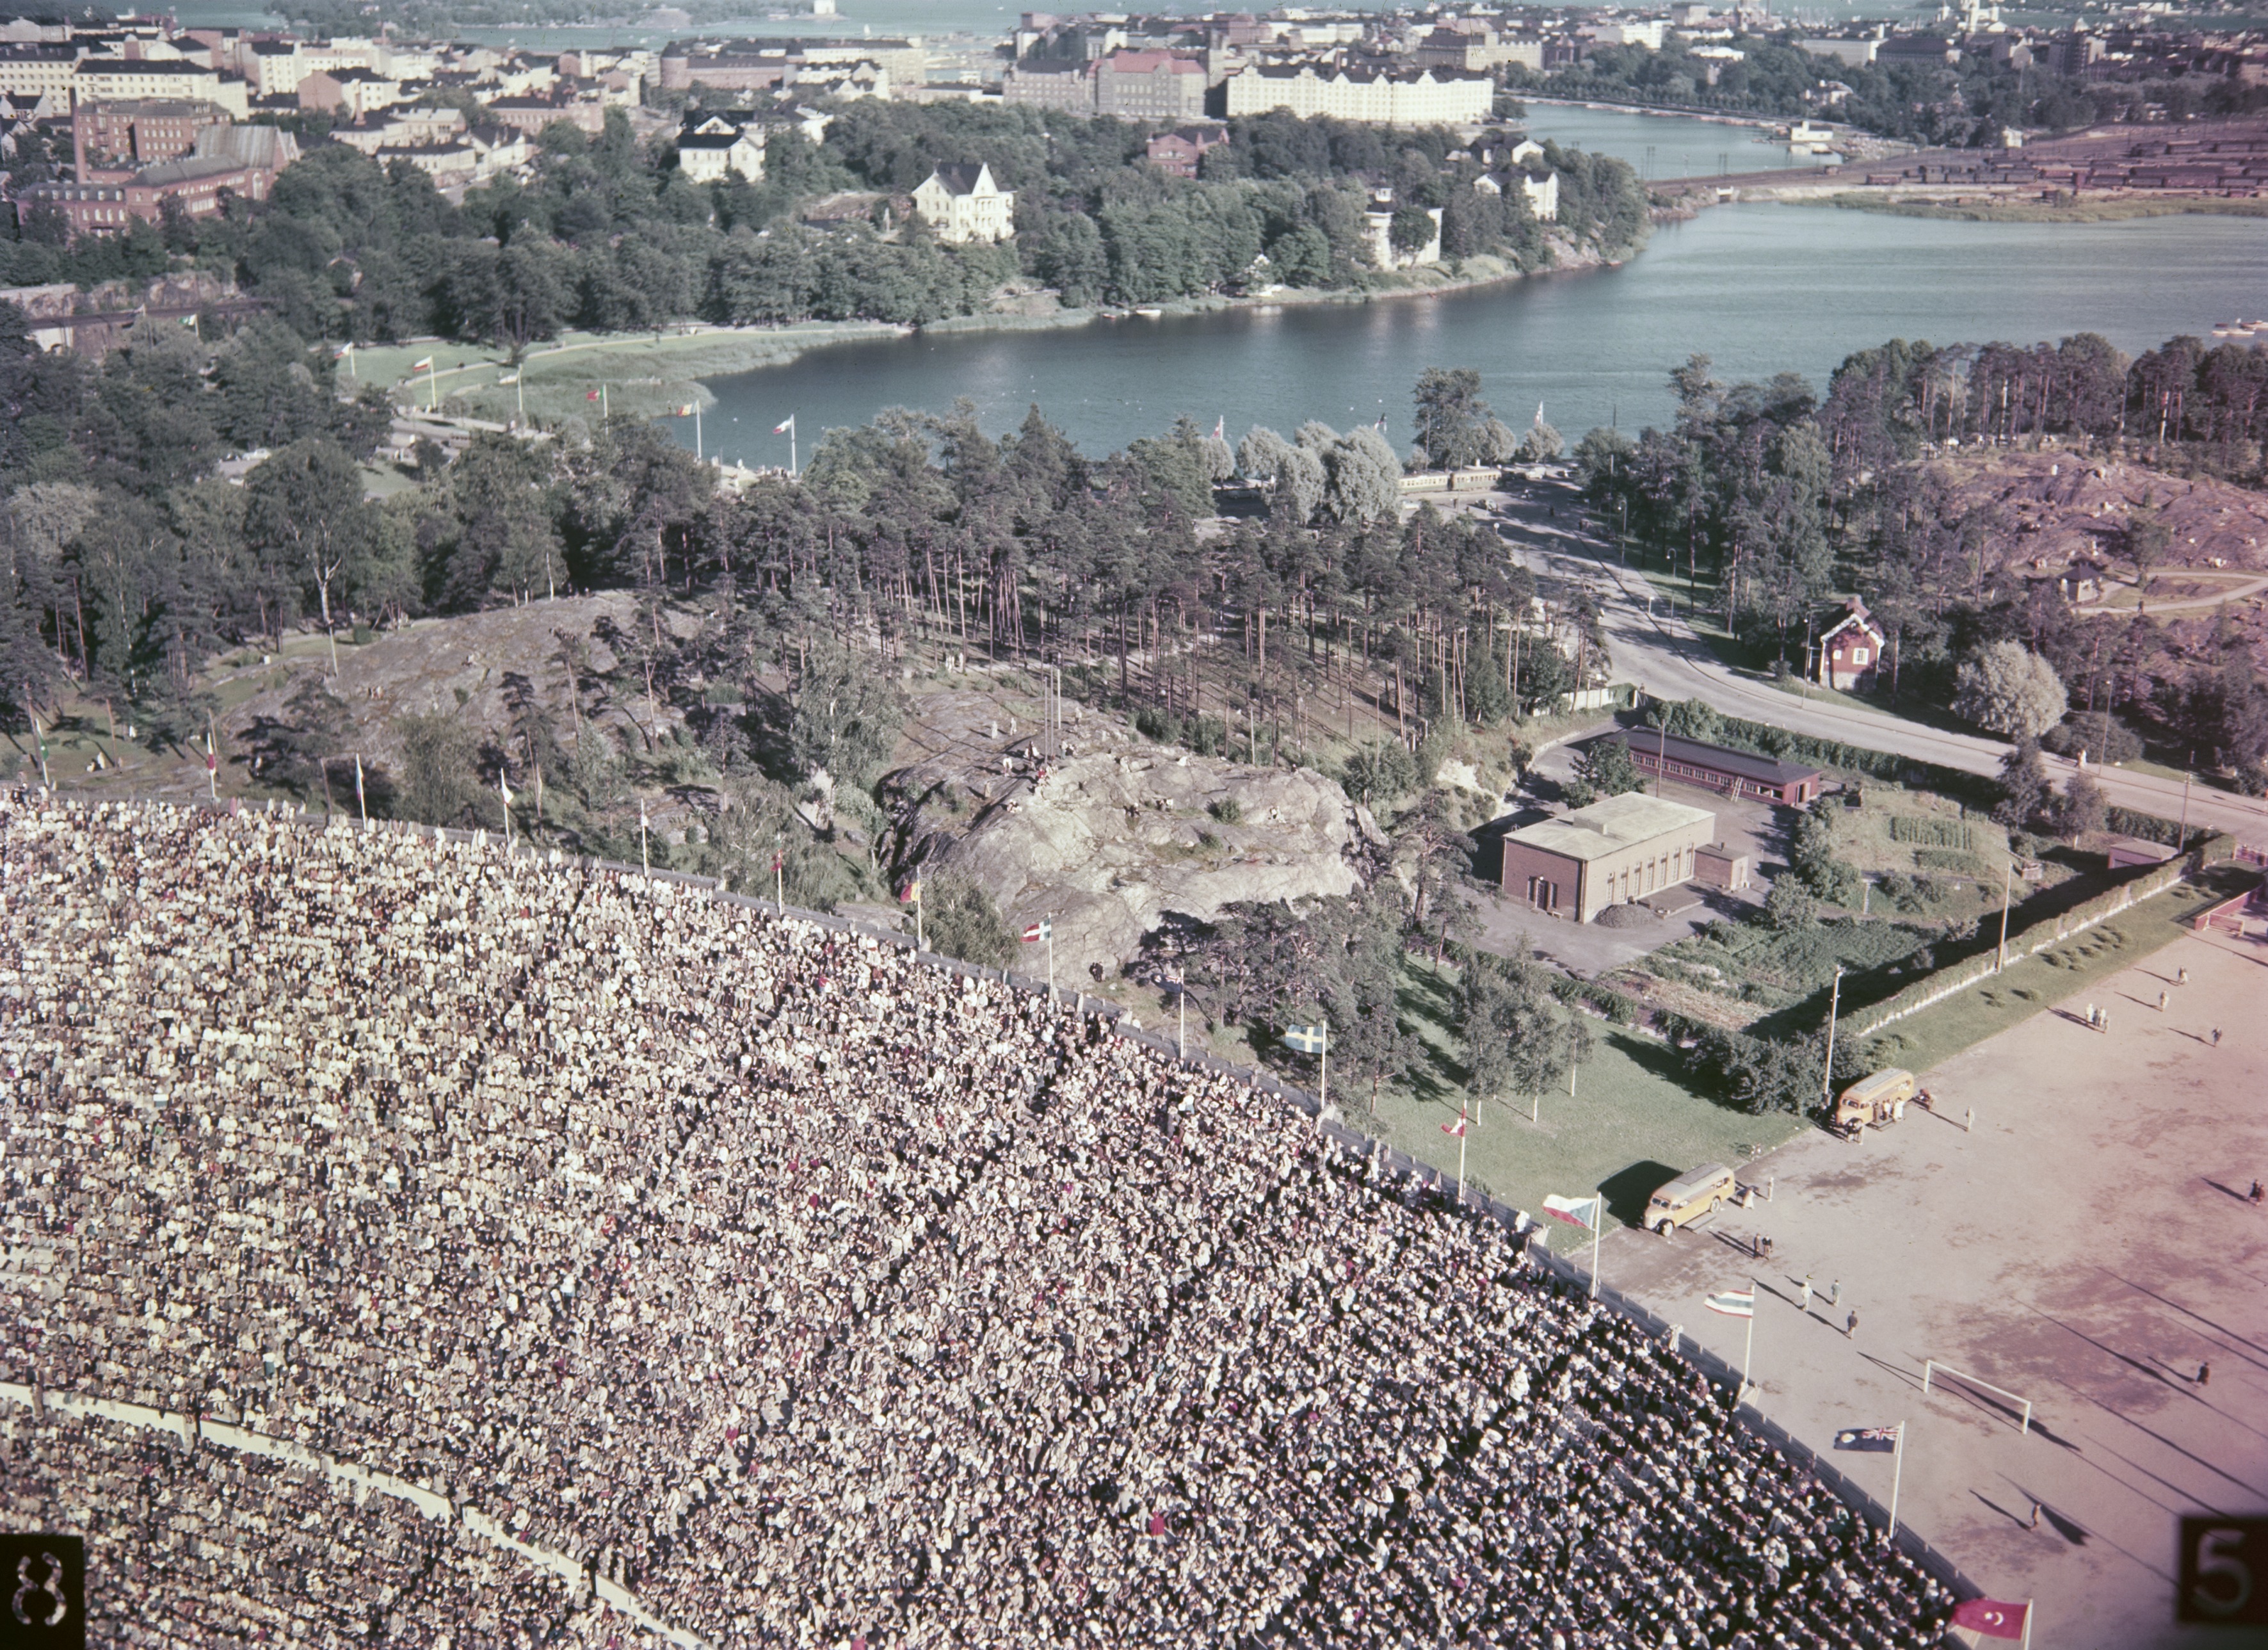 Helsinki olympialaiset 1952. Olympiastadion kuvattuna stadionin tornista.